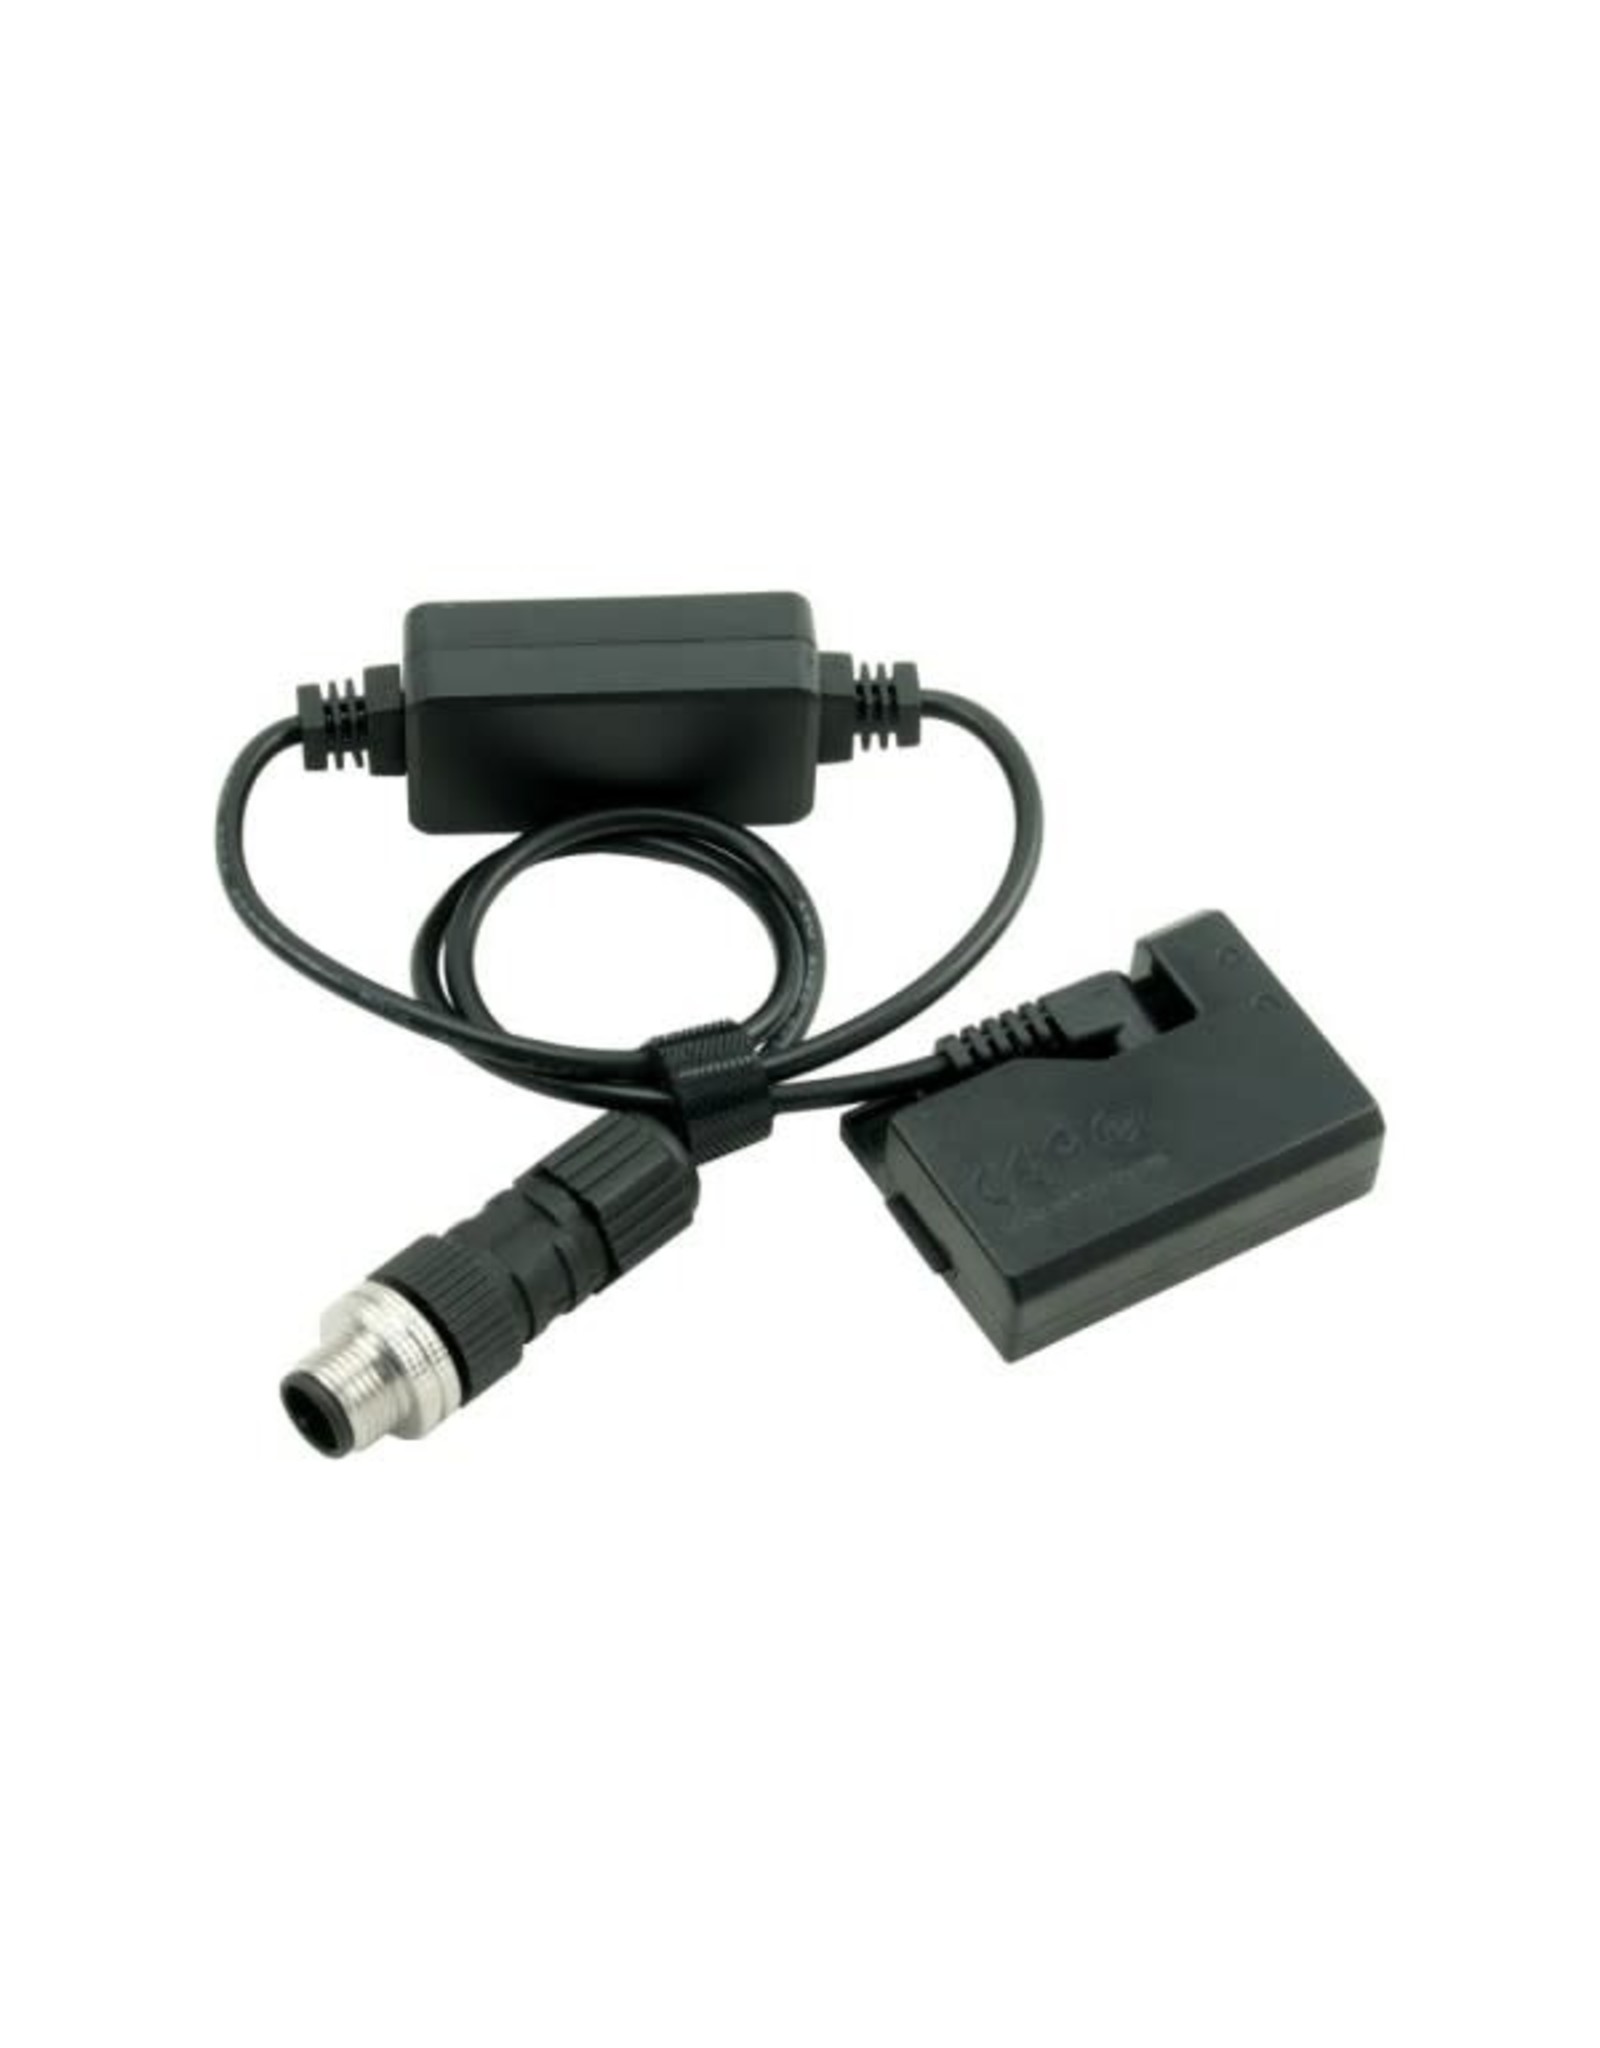 PrimaLuceLab PrimaLuceLab Eagle-compatible power cable for Canon EOS 1100D, 1200D, 1300D 3A